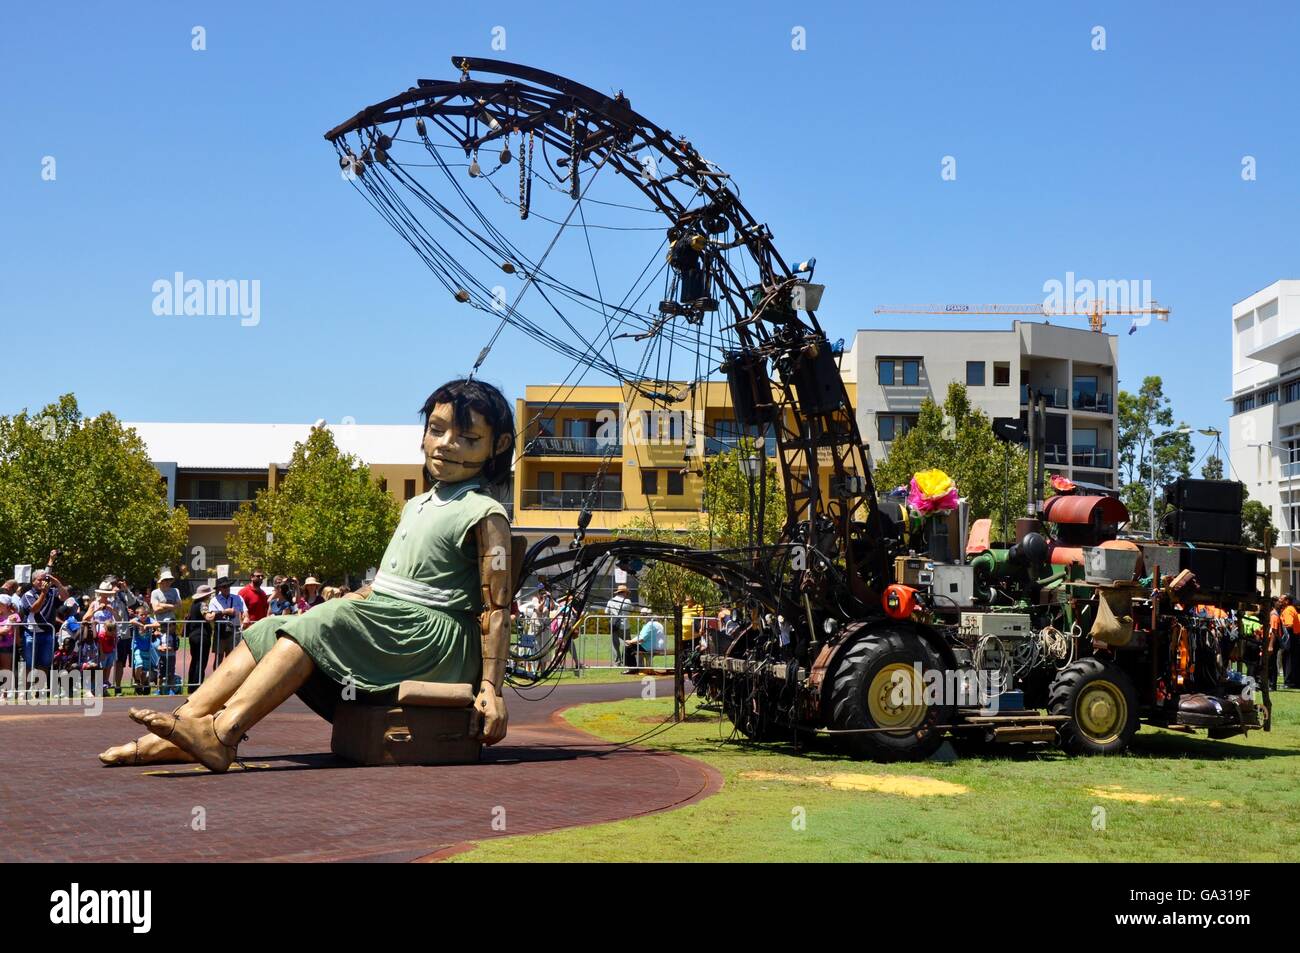 Perth, WA, Australien-Februar 13, 2015: kleines Mädchen Marionette und Zuschauer bei der Reise der Giganten in Perth, Western Australia. Stockfoto